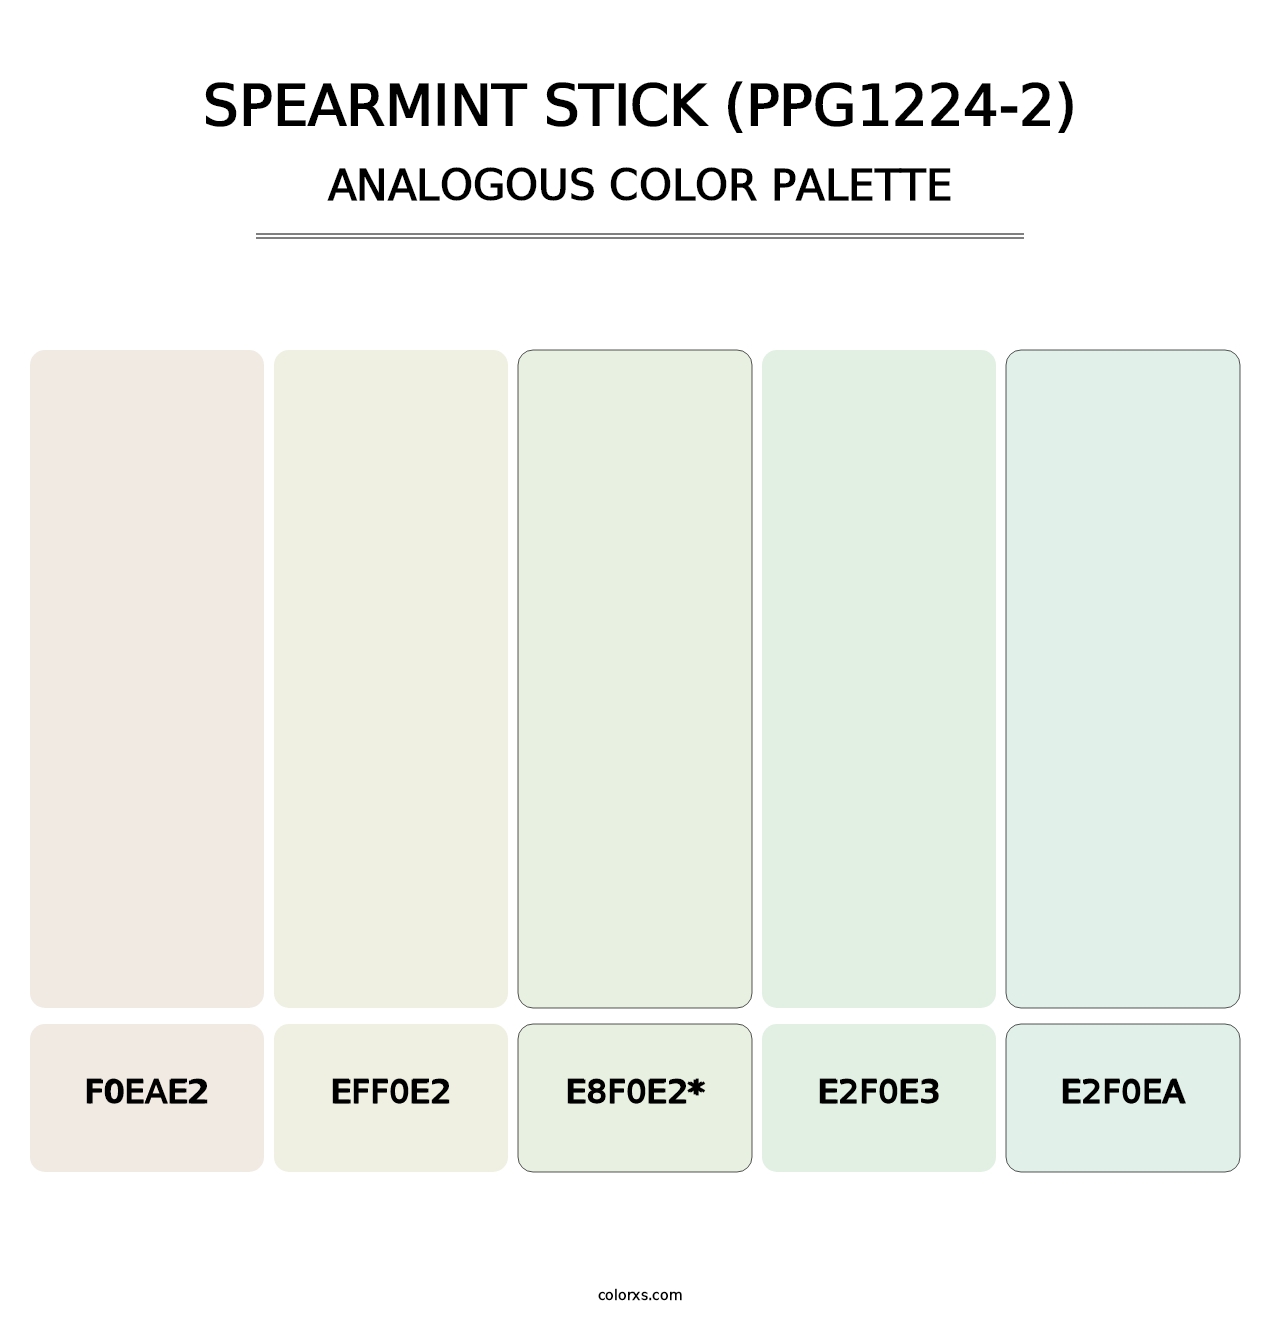 Spearmint Stick (PPG1224-2) - Analogous Color Palette